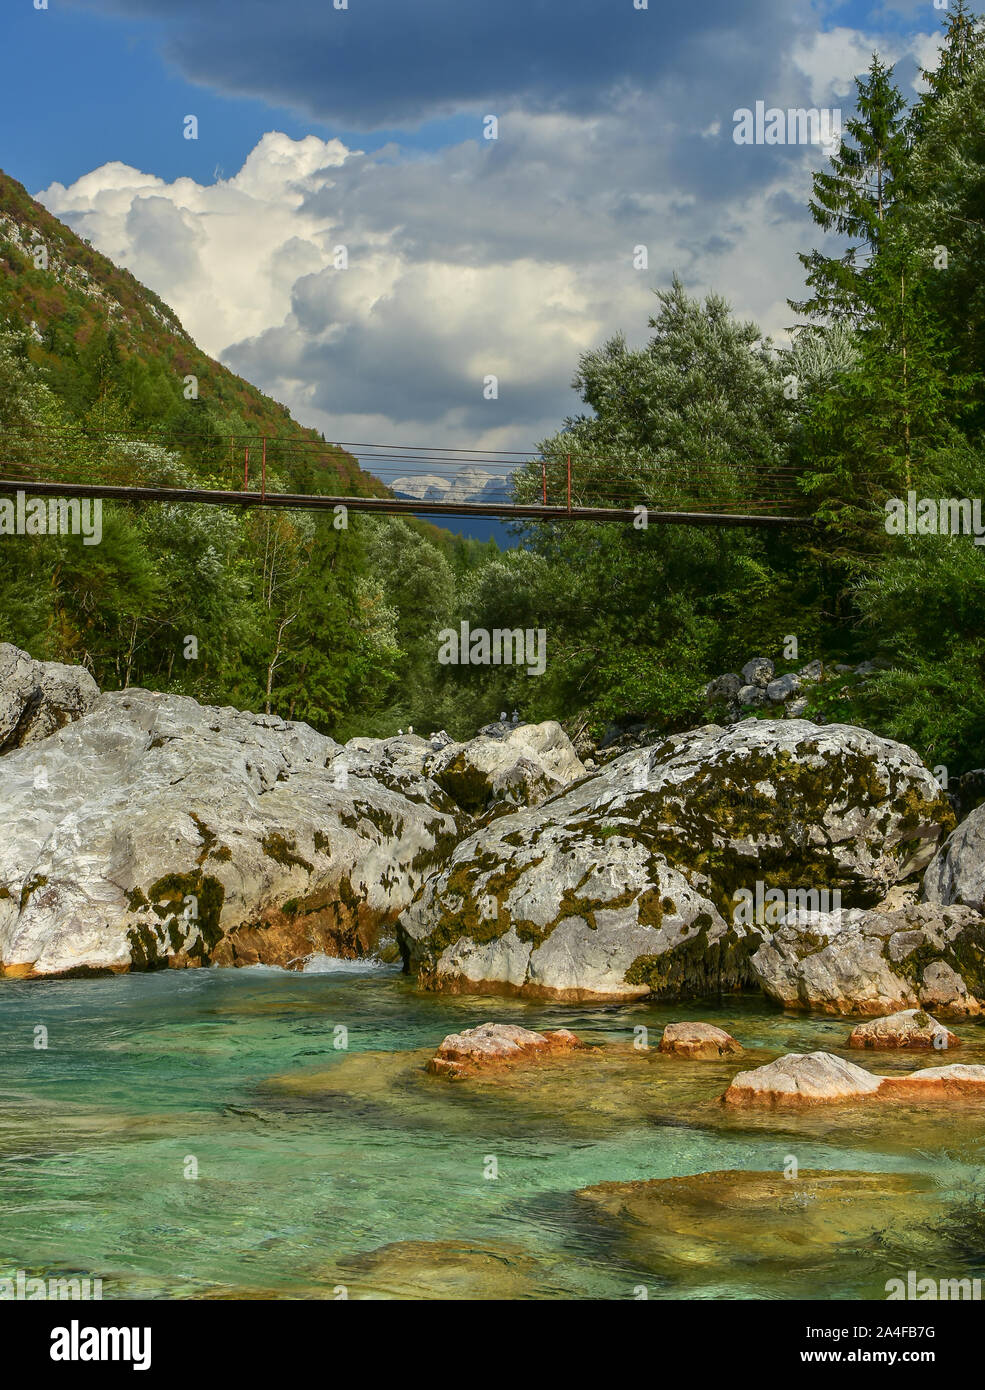 Vertikale Foto des schönen und sauberen Fluss Soca in Slowenien genannt. Im August. Die smaragdgrüne Soča ist der schönste Fluss in Slowenien. Stockfoto